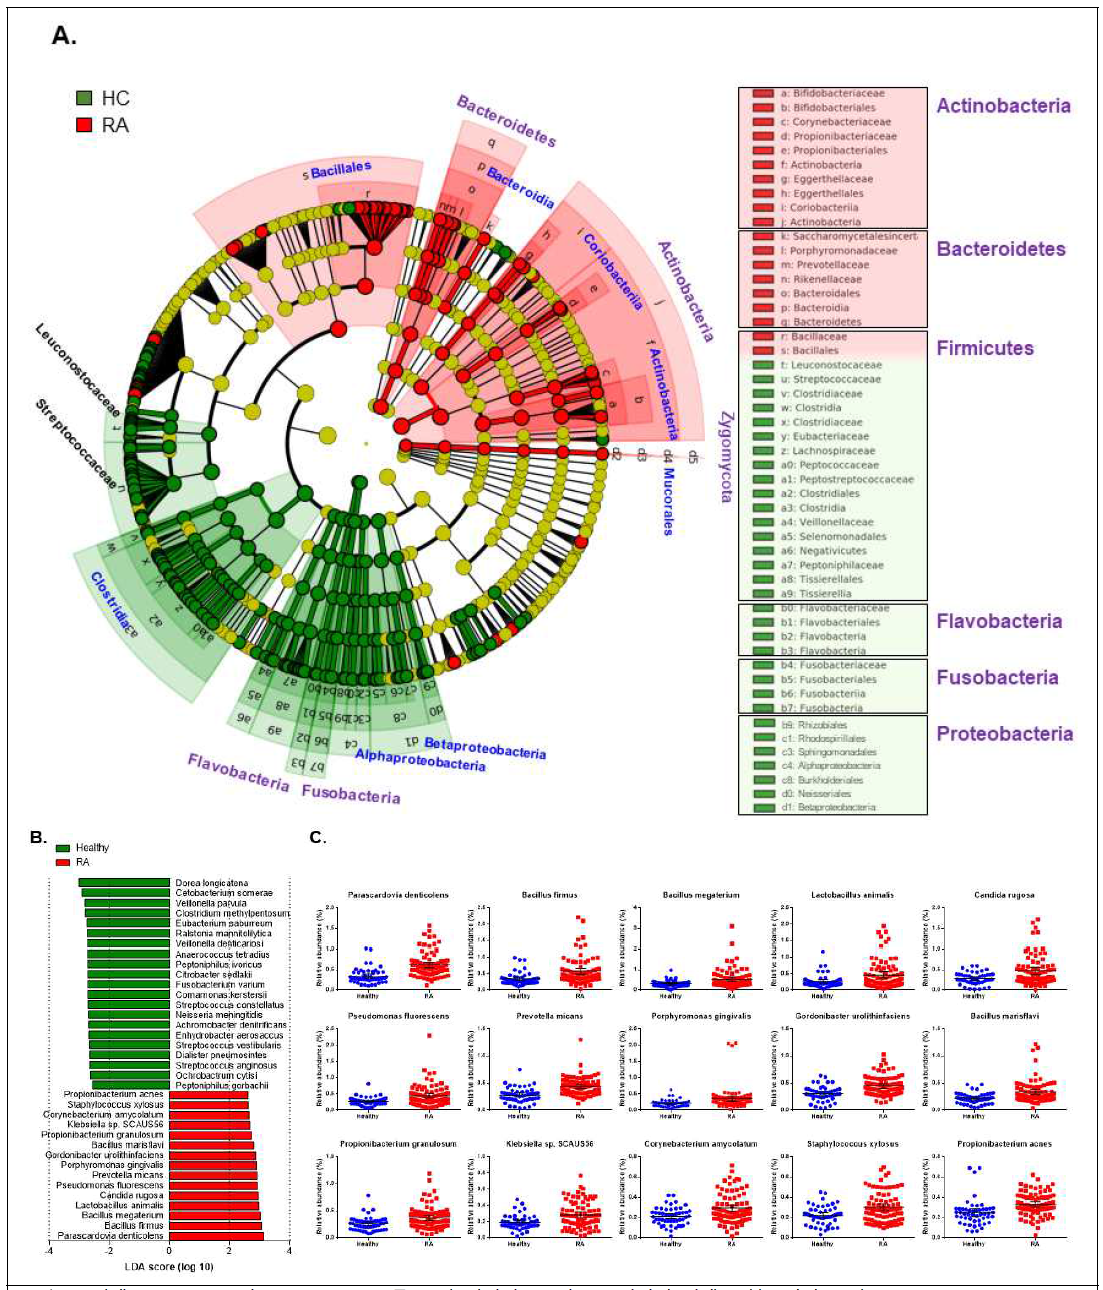 미생물 IgM array의 LEfse analysis를 통한 건강대조군과 RA 환자의 미생물 분류학적 구성. A. Cladogram, B. LDA score를 통해 종 수준에서 유의미한 차이를 나타내는 인체미생물, C. RA에서 유의적으로 증가되어 있는 인체미생물종의 상 대적 분포도. 녹색은 건강대조군, 빨간색은 RA에서 특이적으로 높은 분포도를 나태내는 인체미생물 분류 구성 및 종.. LDA threshold score 2, P<0.01